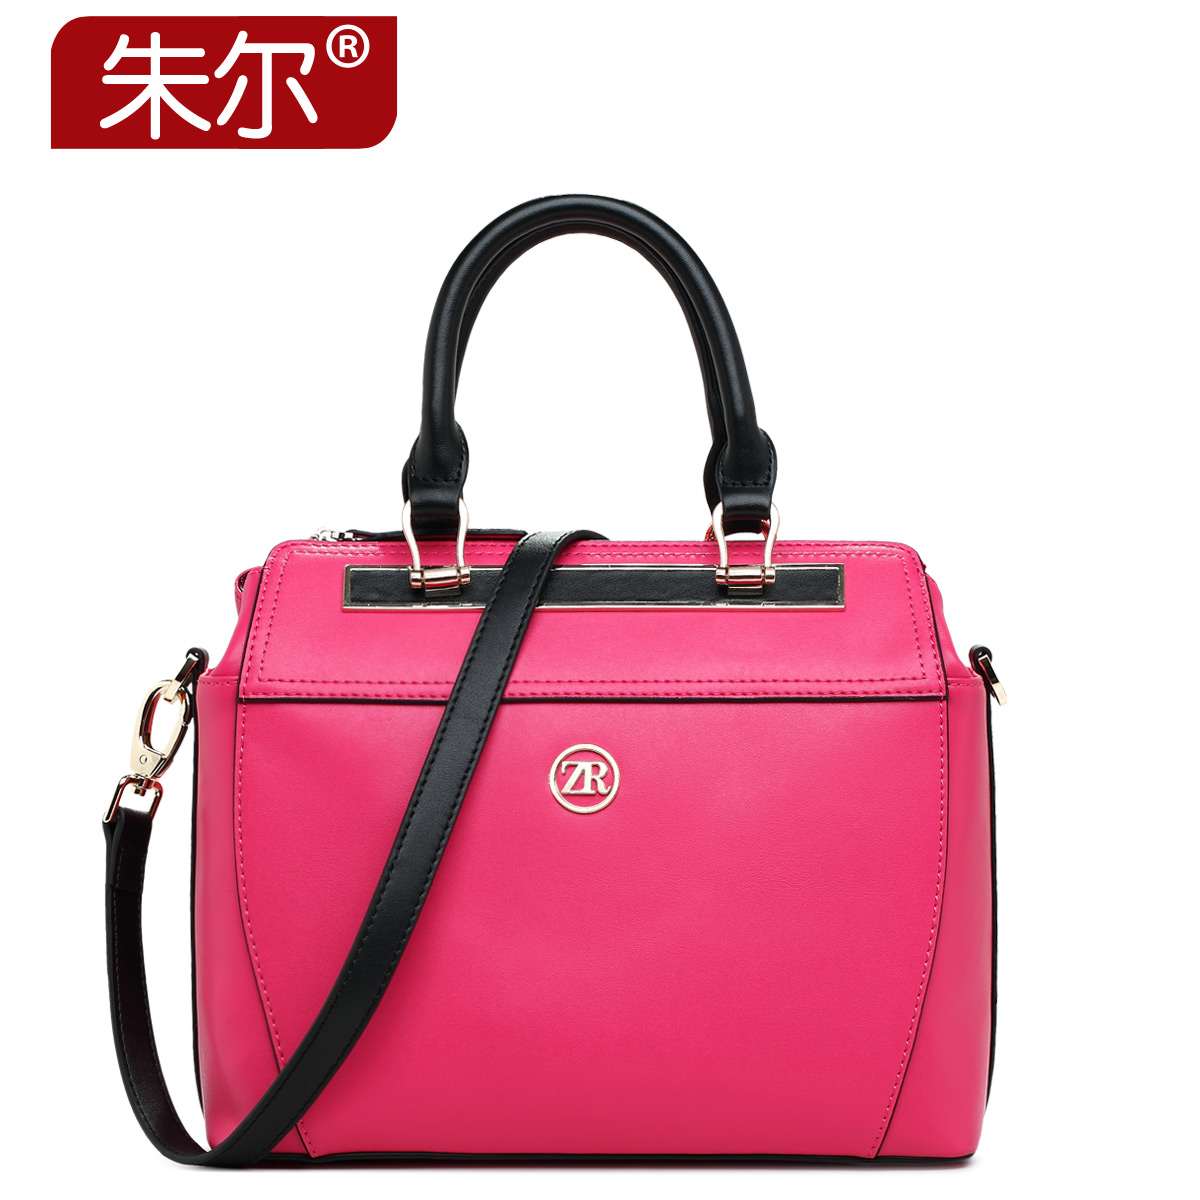 2015 women's cowhide handbag elegant handbag fashion women's bags trend one shoulder handbag female